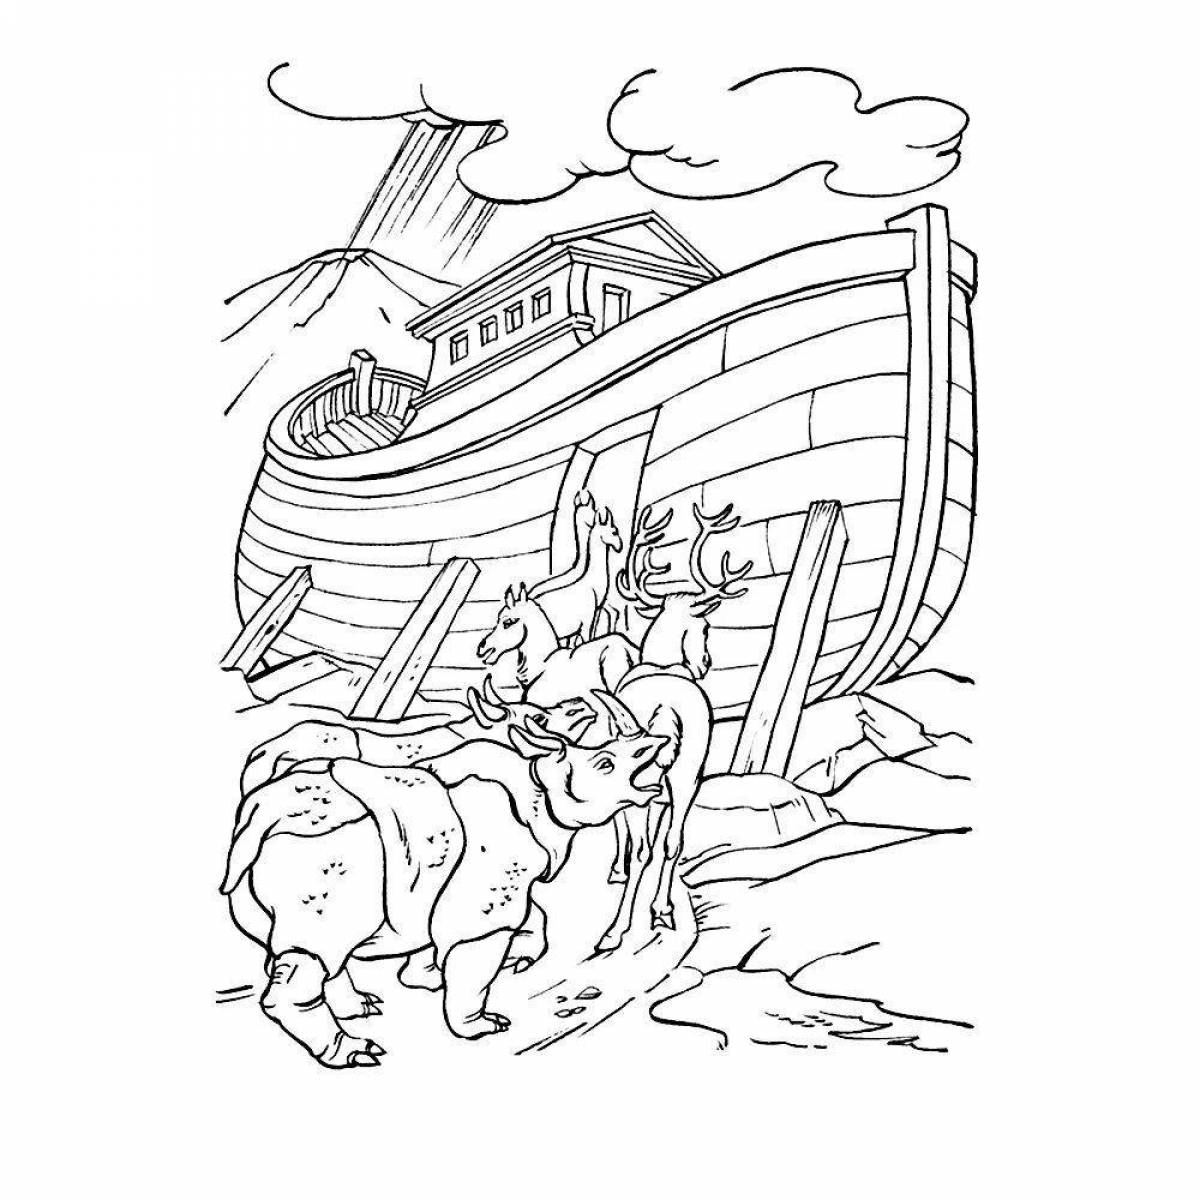 Fabulous Noah's Ark coloring book for kids